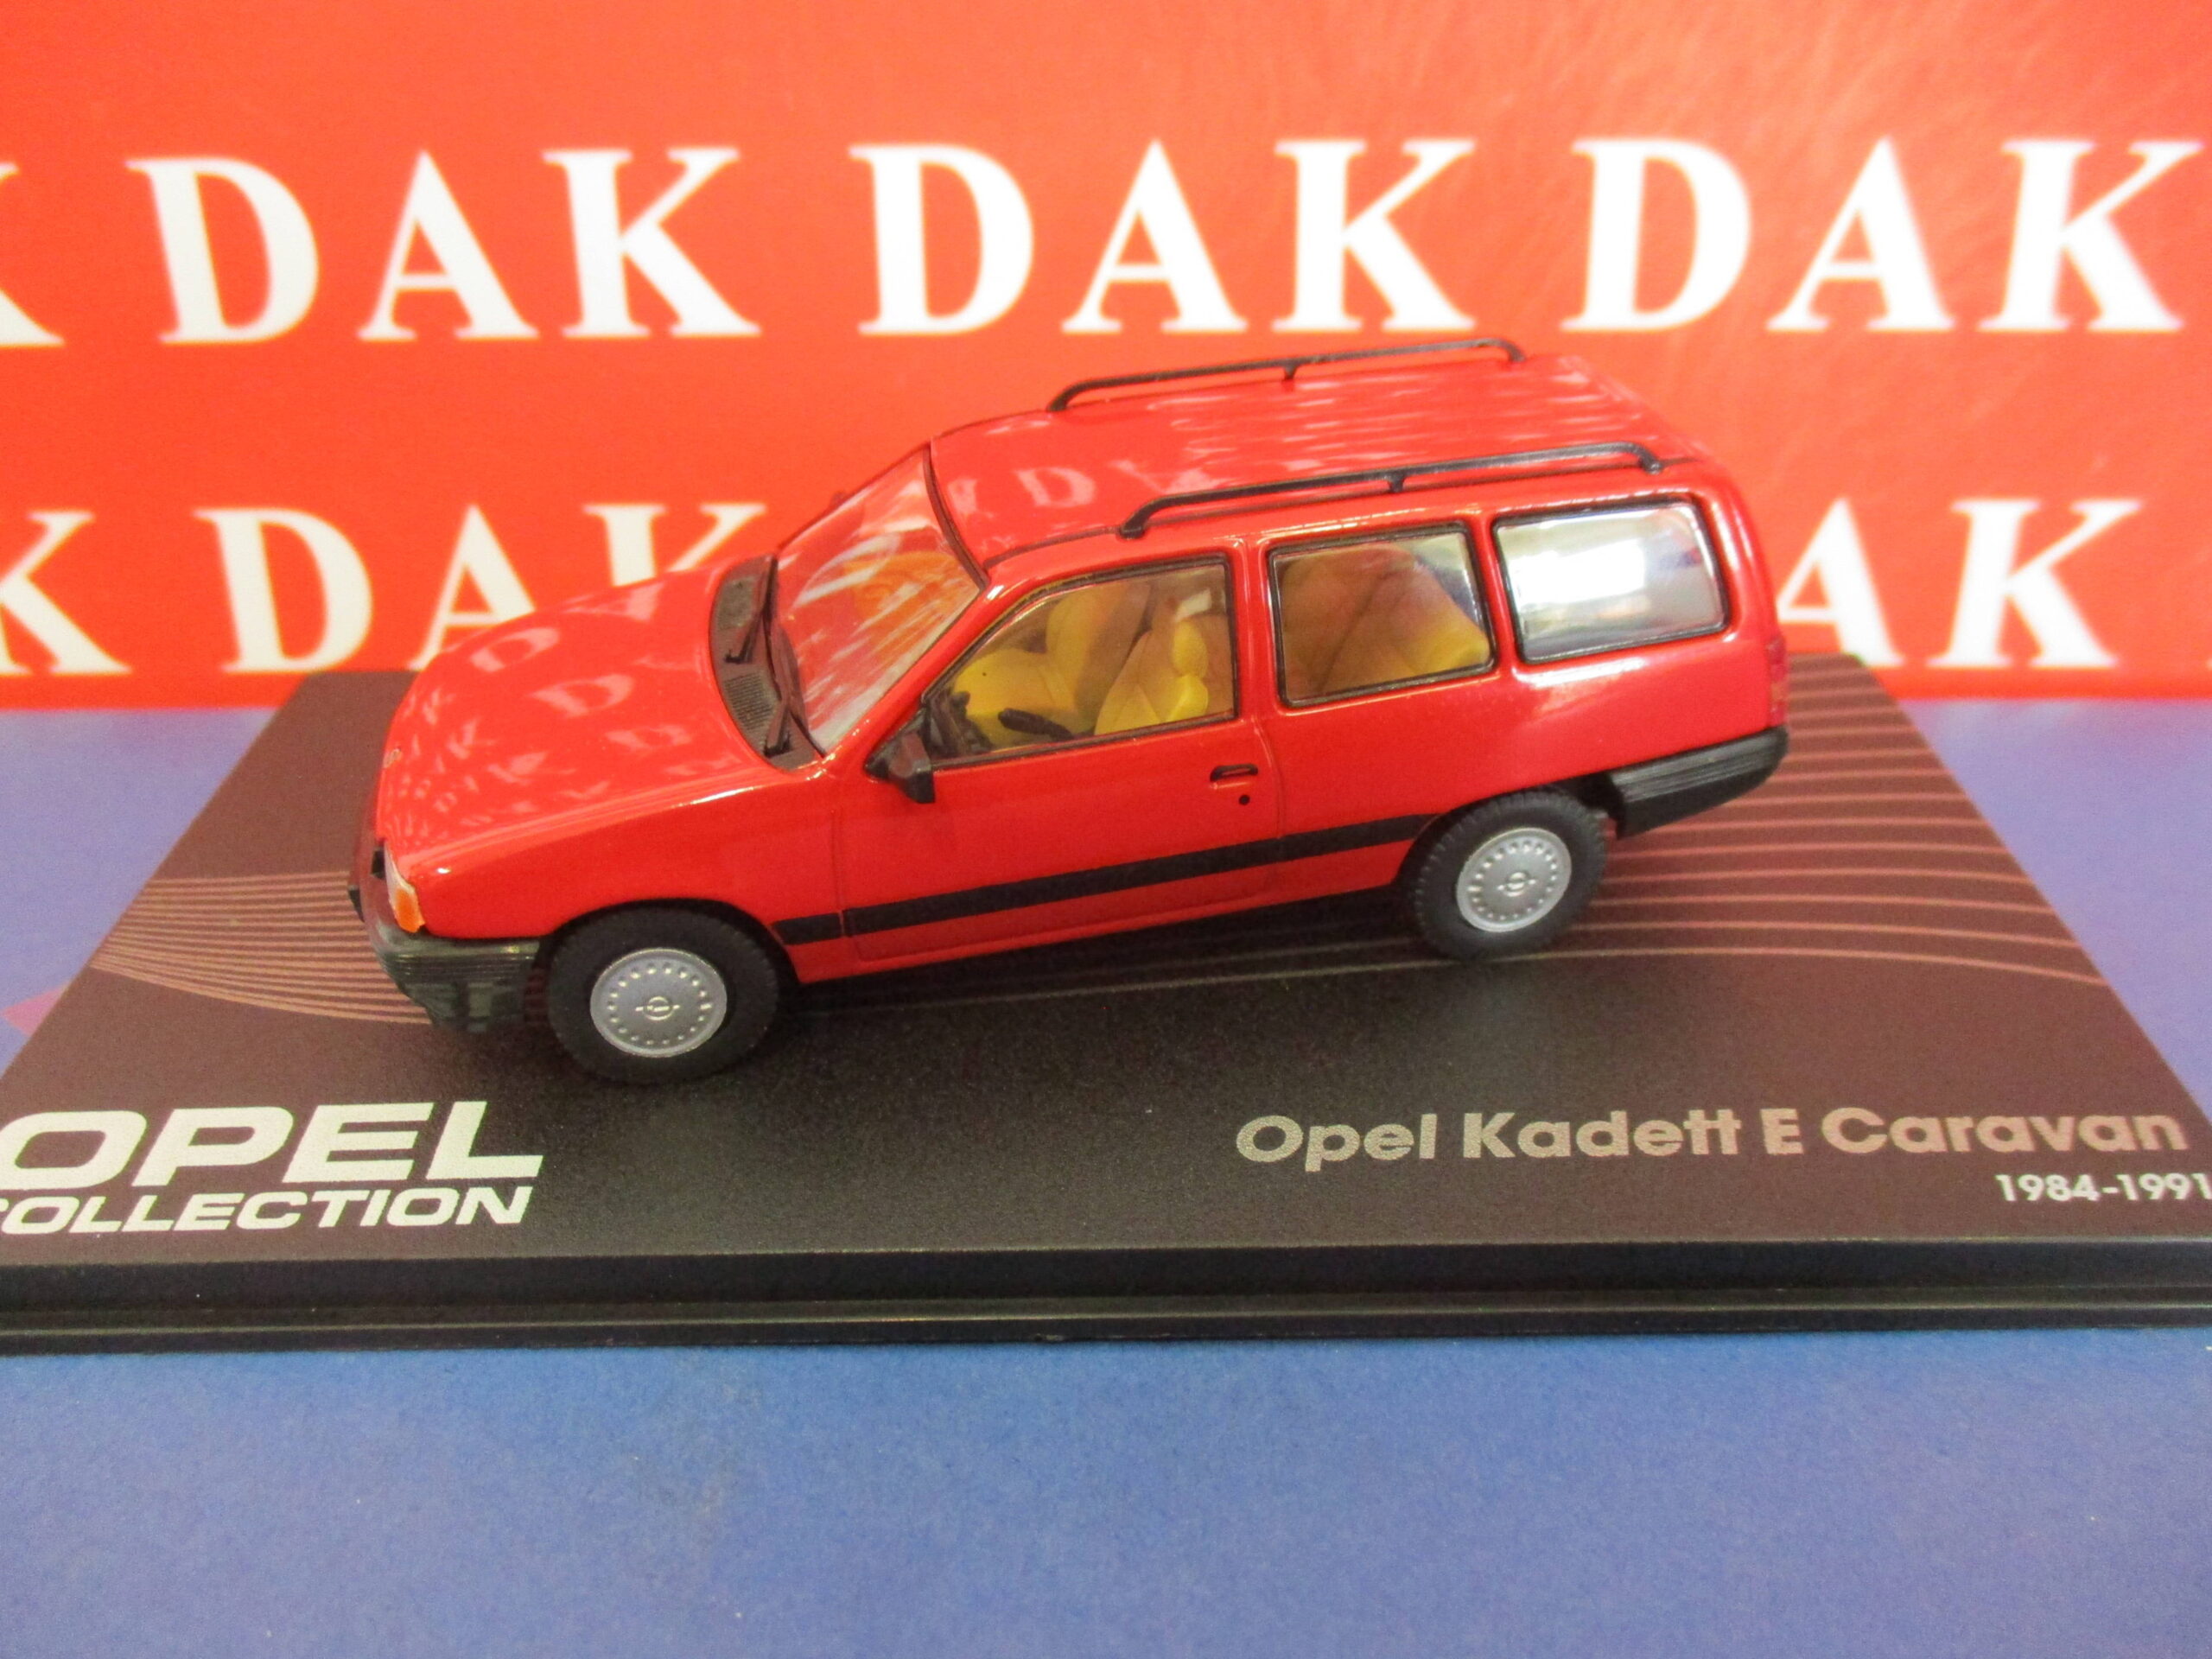 Die cast 1/43 Modellino Auto Opel Kadett E Caravan Red 1984-91